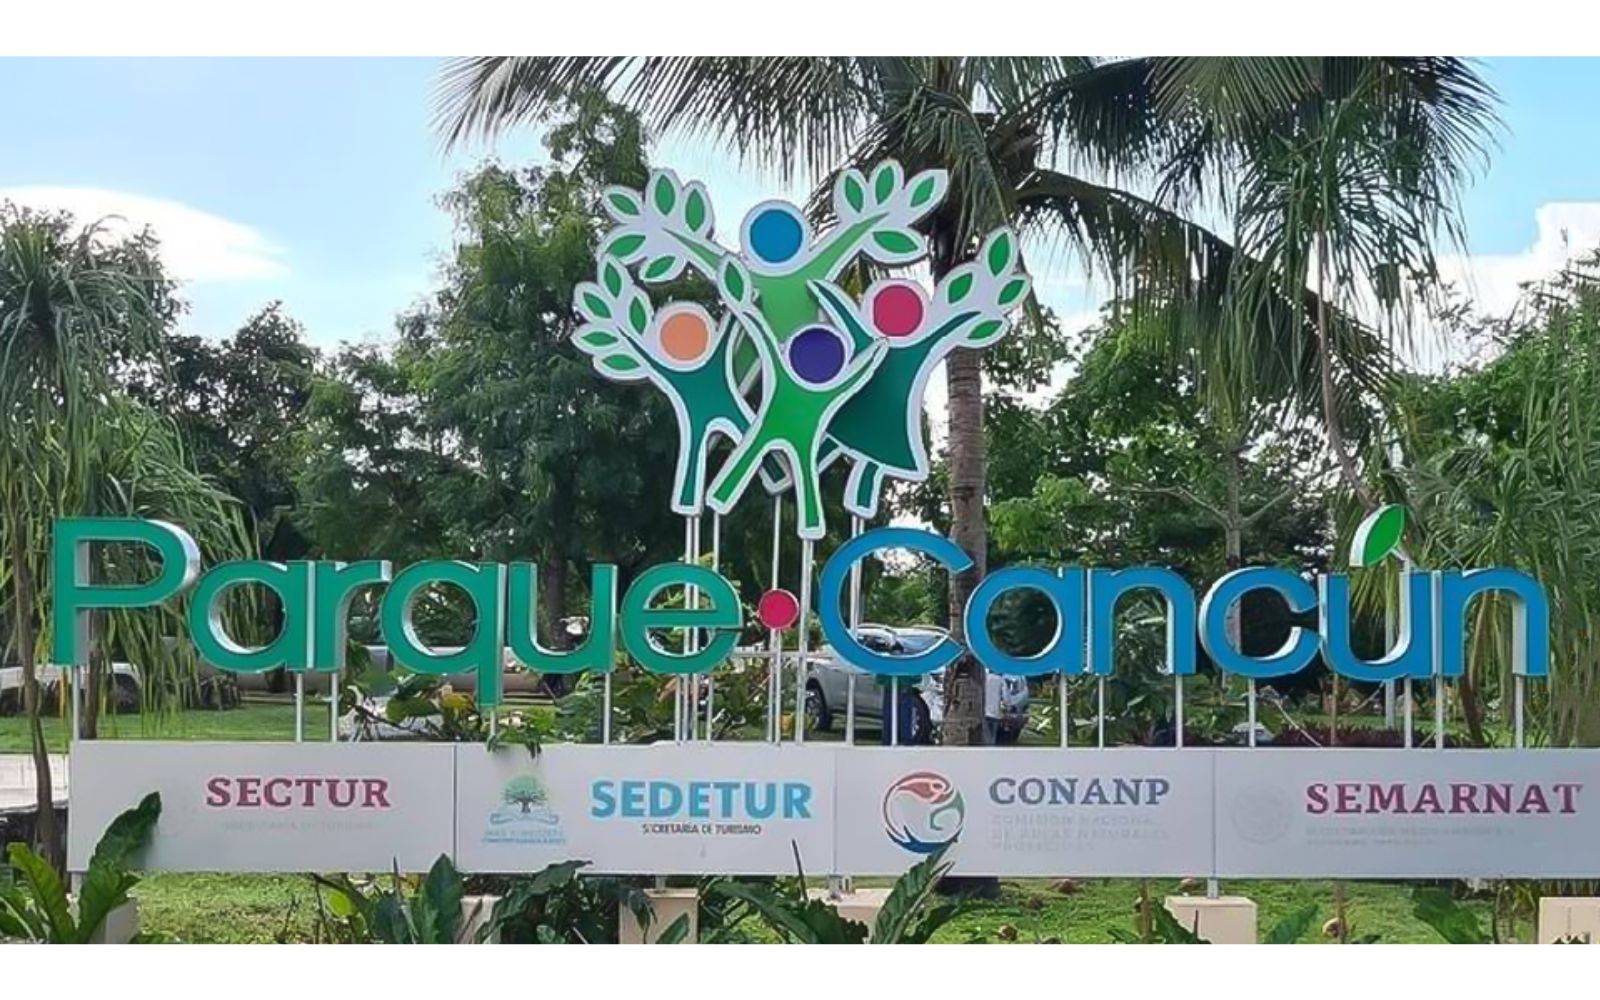 Condominio con 50 amenidades, cine, spa, spinning, albercas para niños y adultos, parque para perros y mas, pre-construccion- venta Cancun.